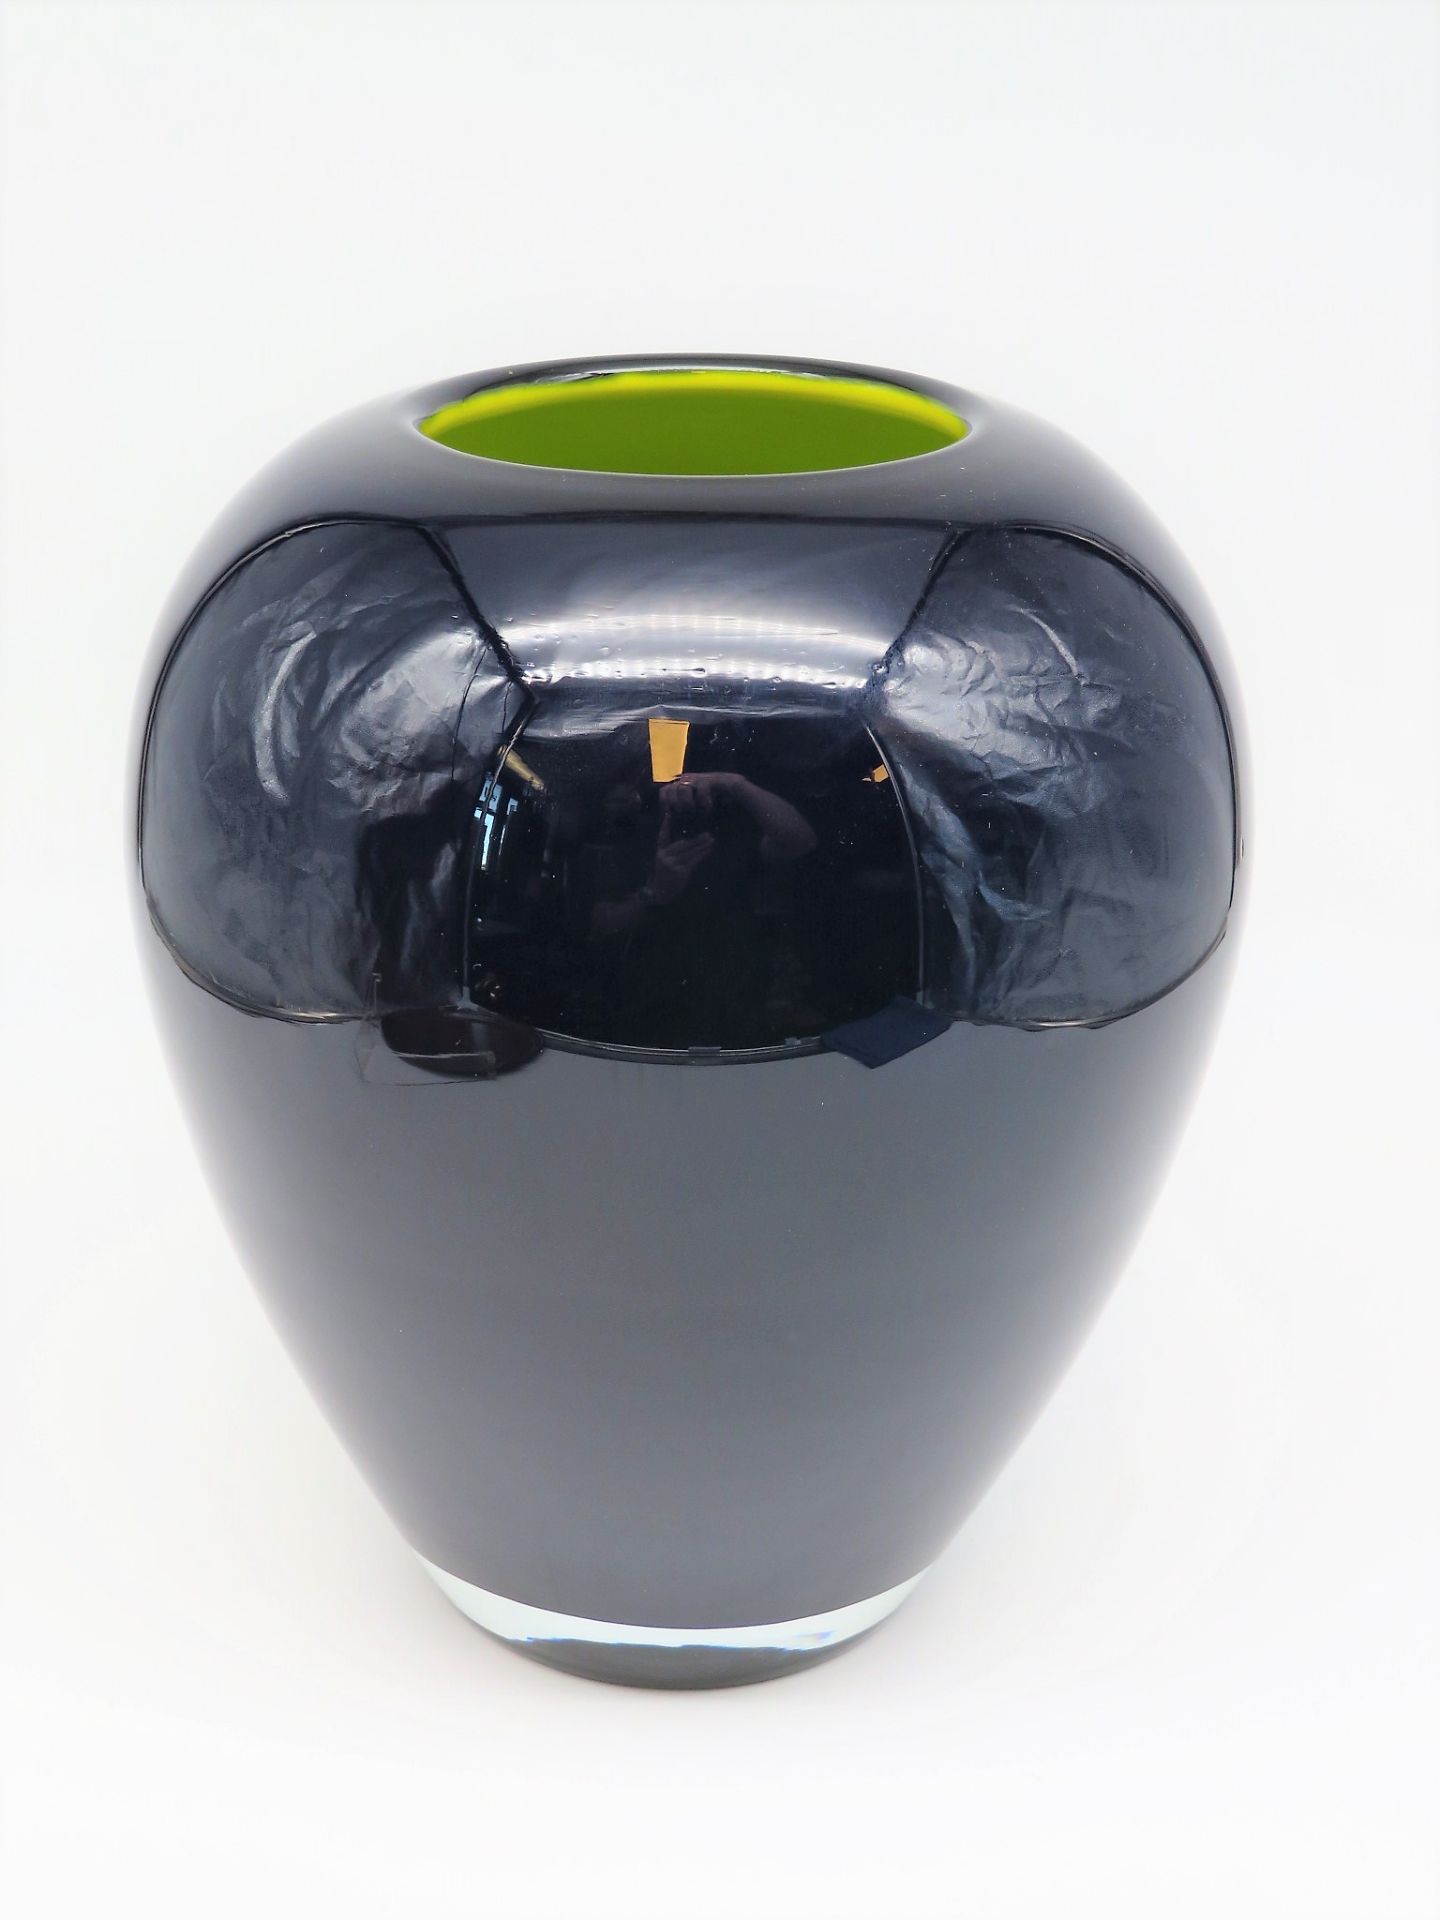 Designer Vase, 1970/80er Jahre, gelb-bläuliches Glas, h 26 cm, d 23 cm.